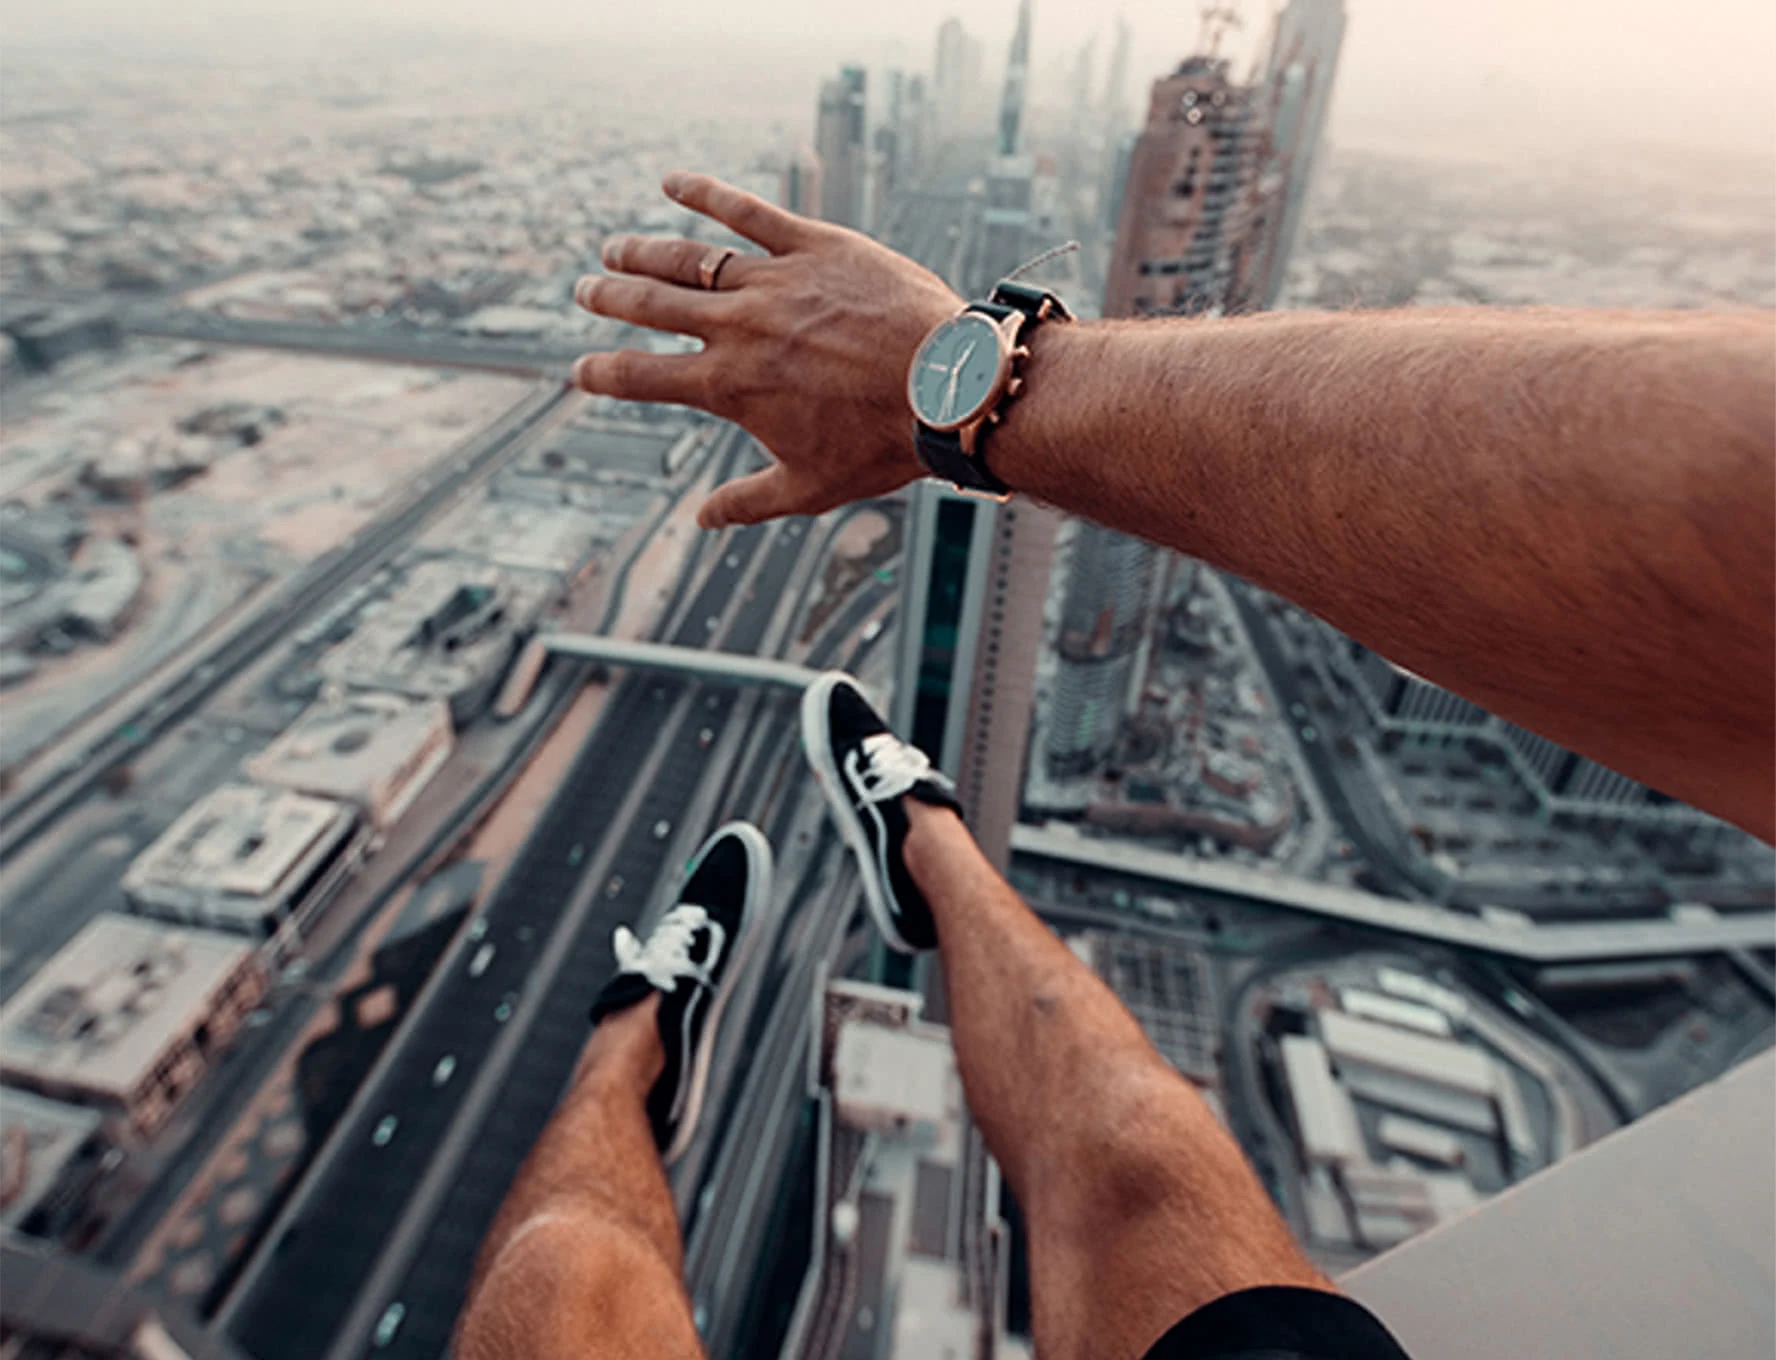 Pernas balançando com tênis branco e preto e um braço com relógio no pulso sobre uma ampla paisagem urbana